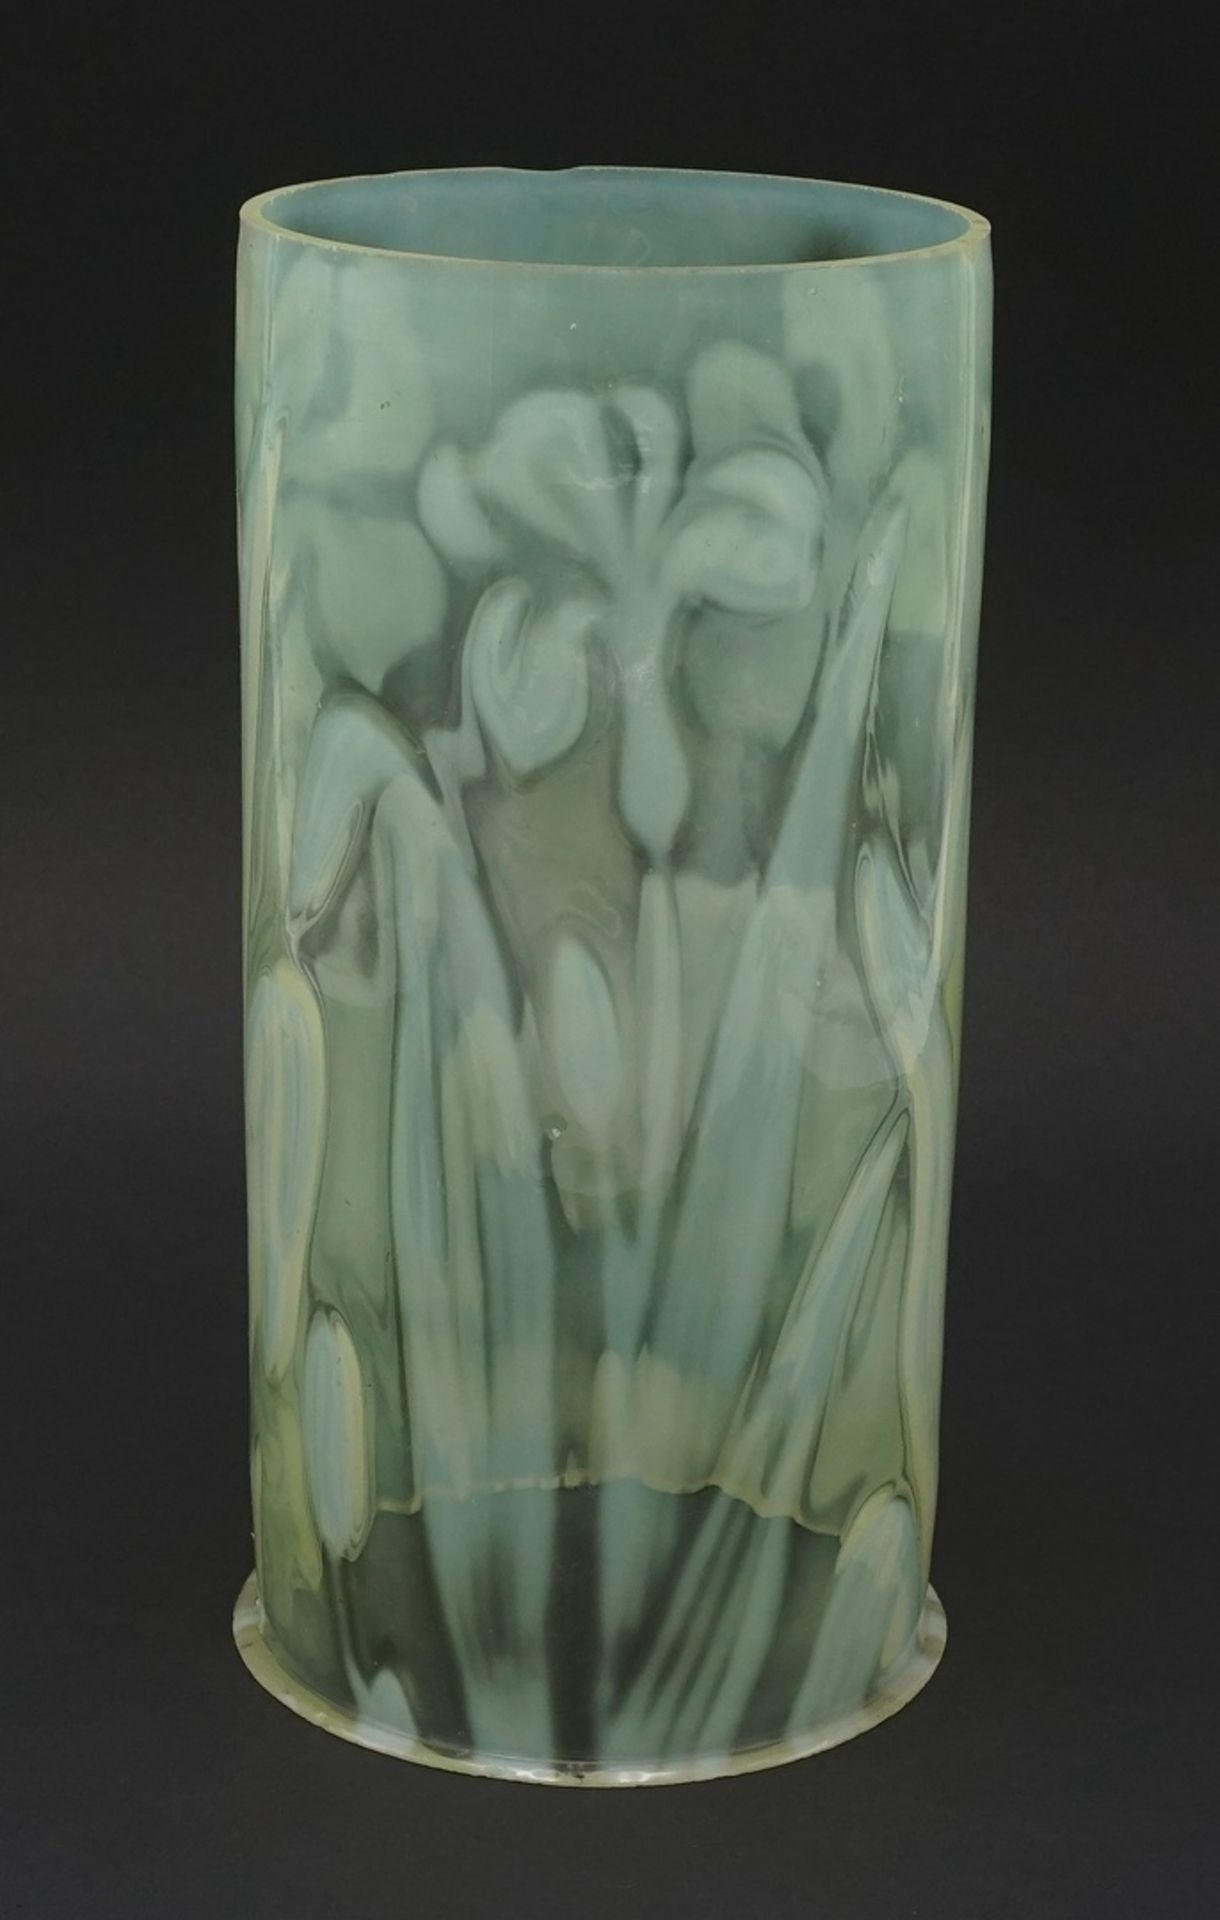 Jugendstil Lampenschirm / Windlicht, 1. Hälfte 20. Jh.grünlich opakes Glas mit aufgeschmolzenen - Bild 2 aus 2